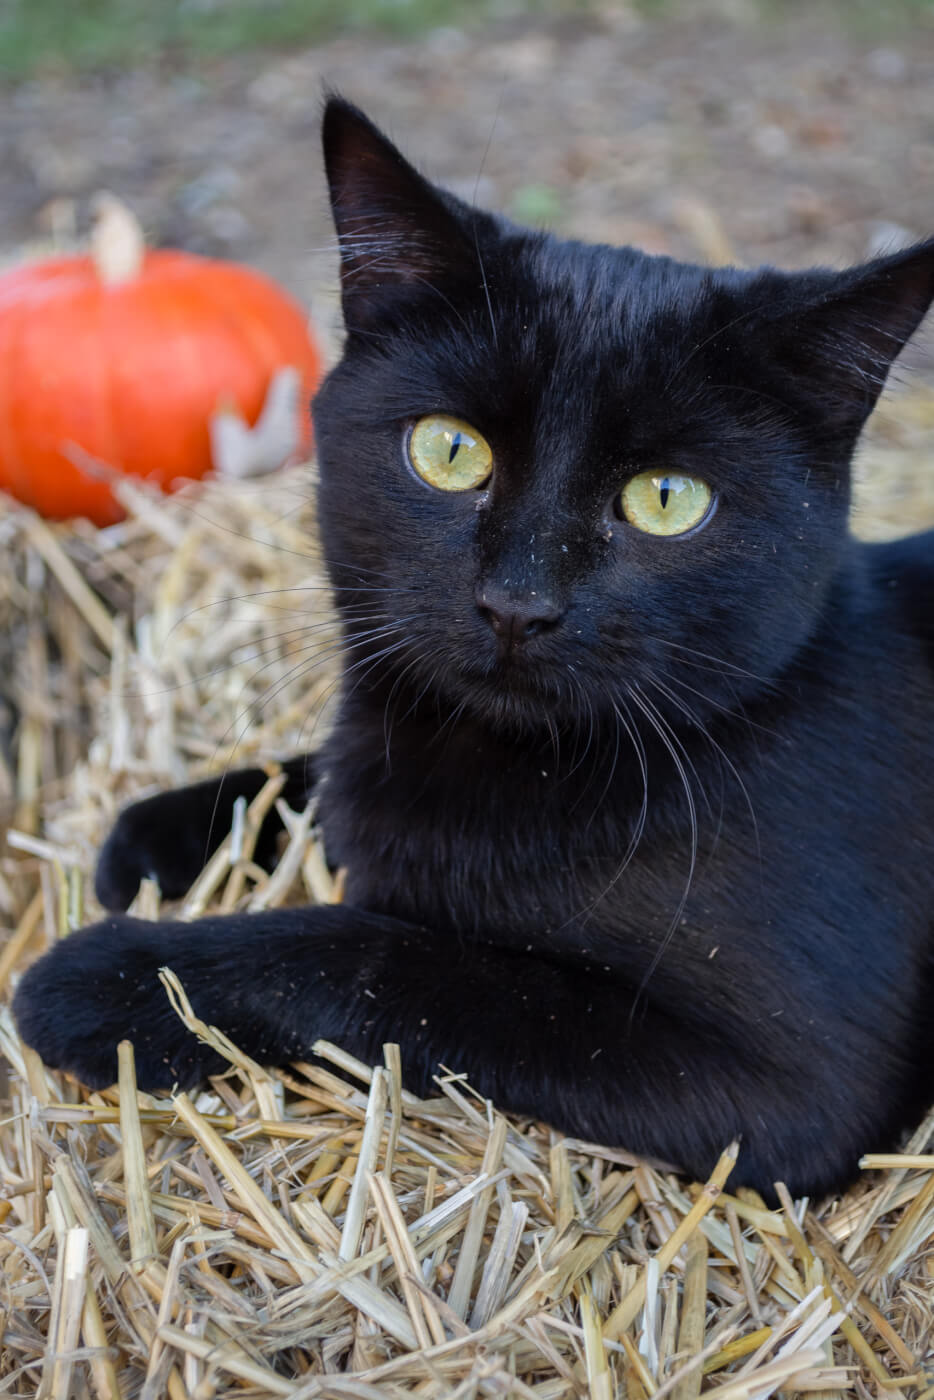 Este Halloween mantén a tus animales seguros y felices | Blog | PETA Latino